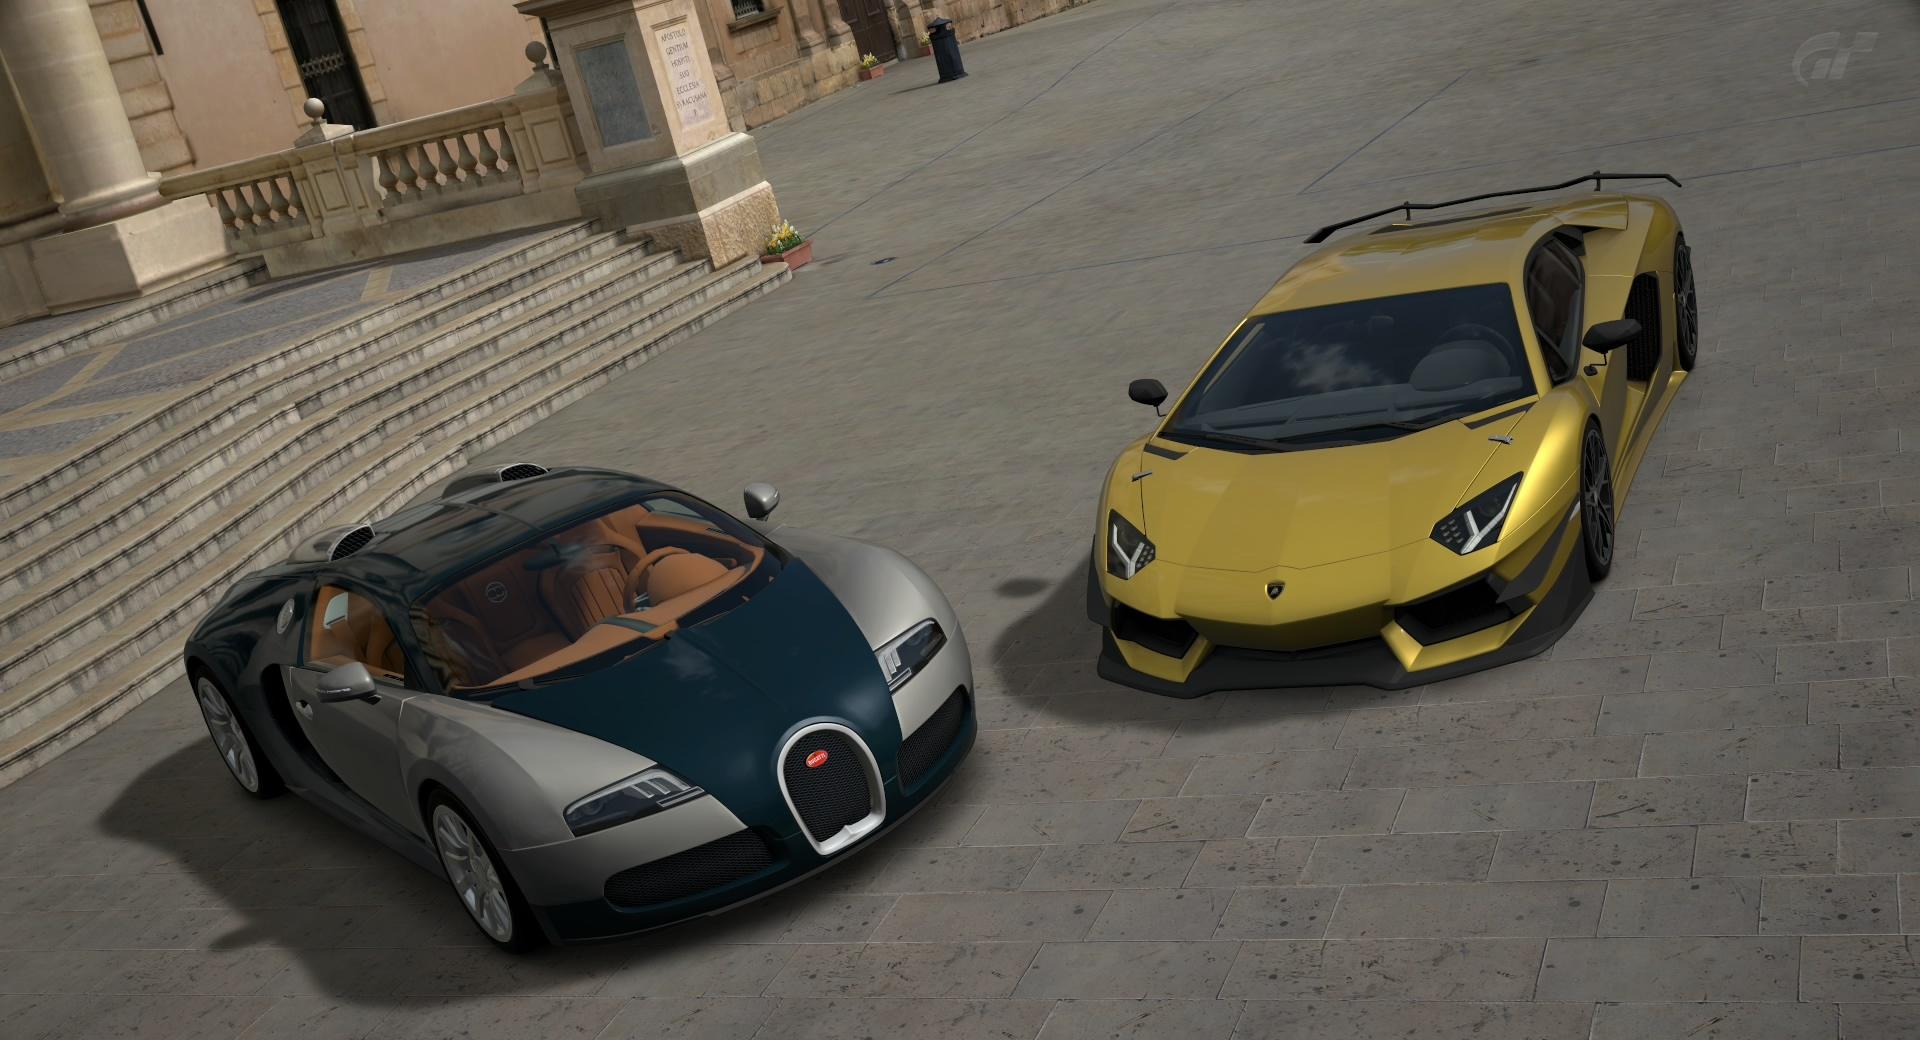 Gran Turismo Lamborghini and Bugatti at 1152 x 864 size wallpapers HD quality